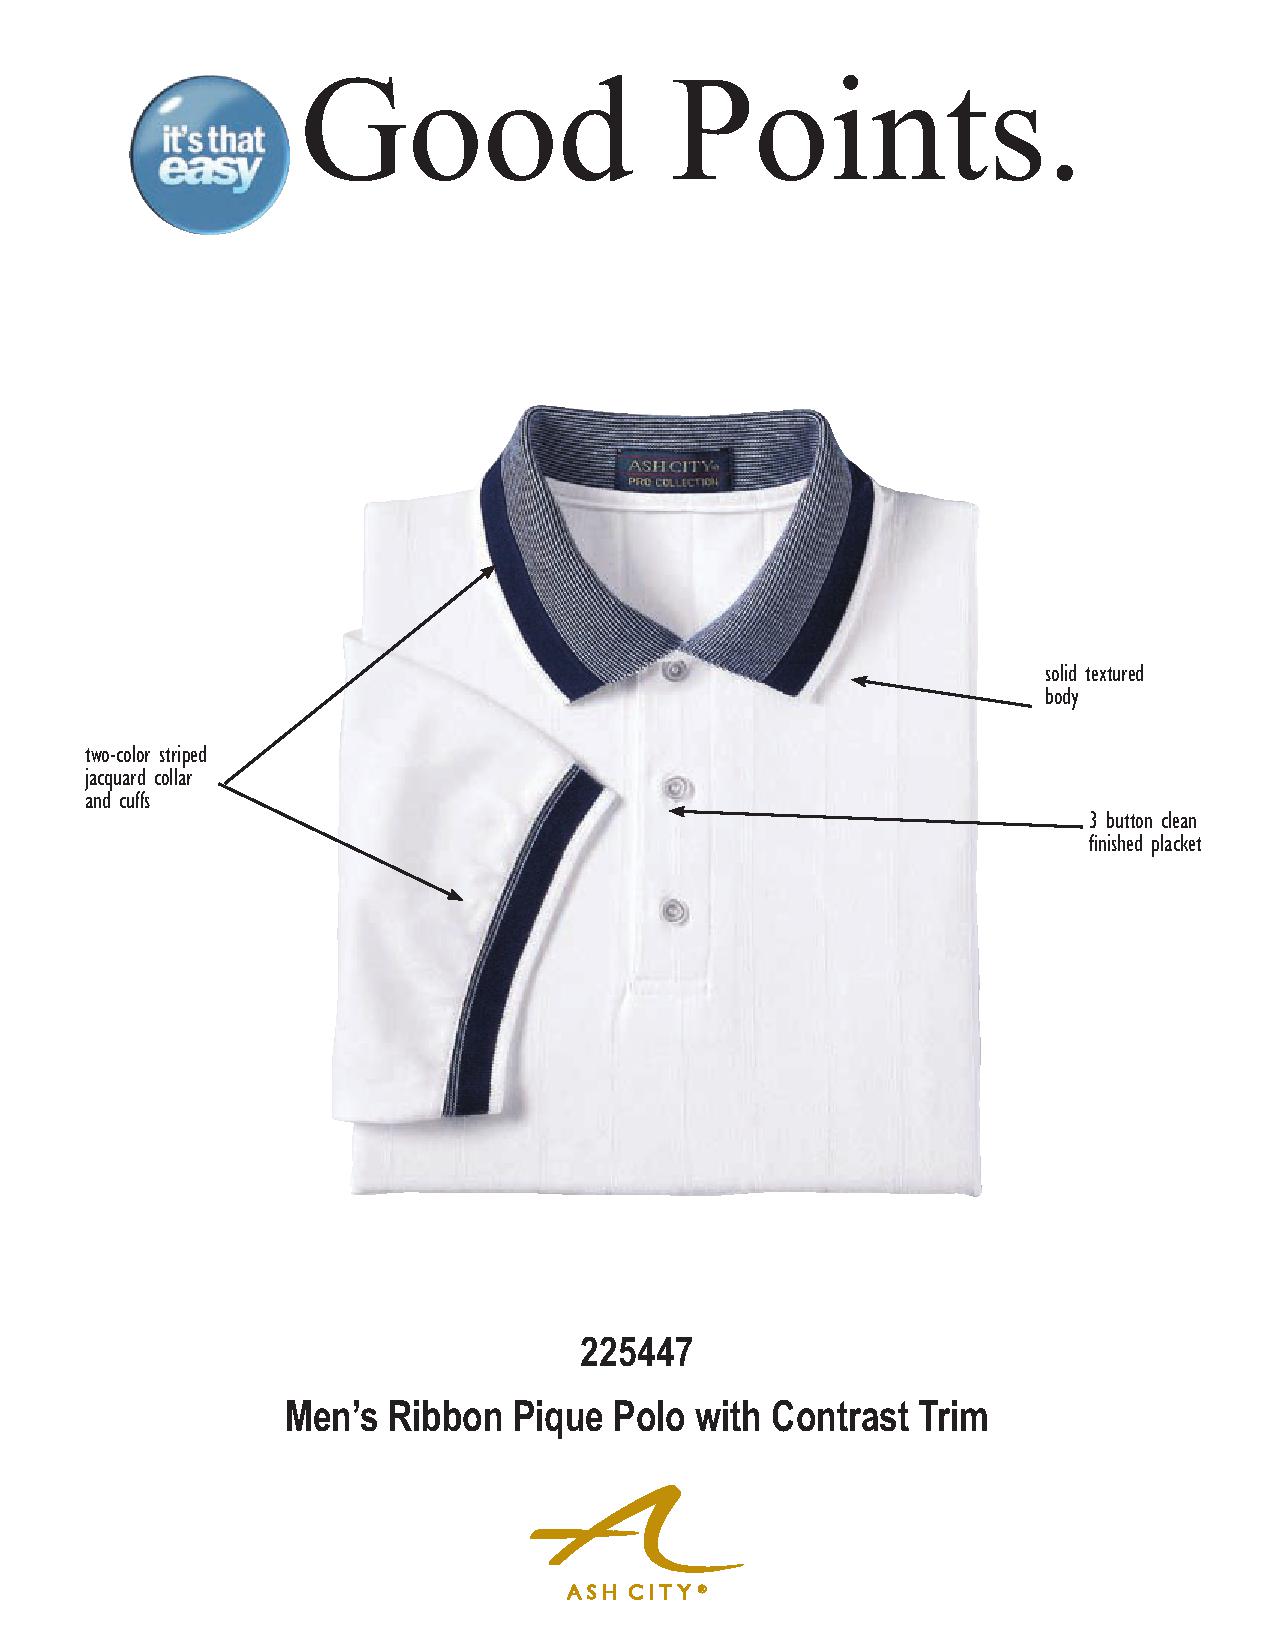 Ash City Pique 225447 - Men's Ribbon Pique Polo With Contrast Trim